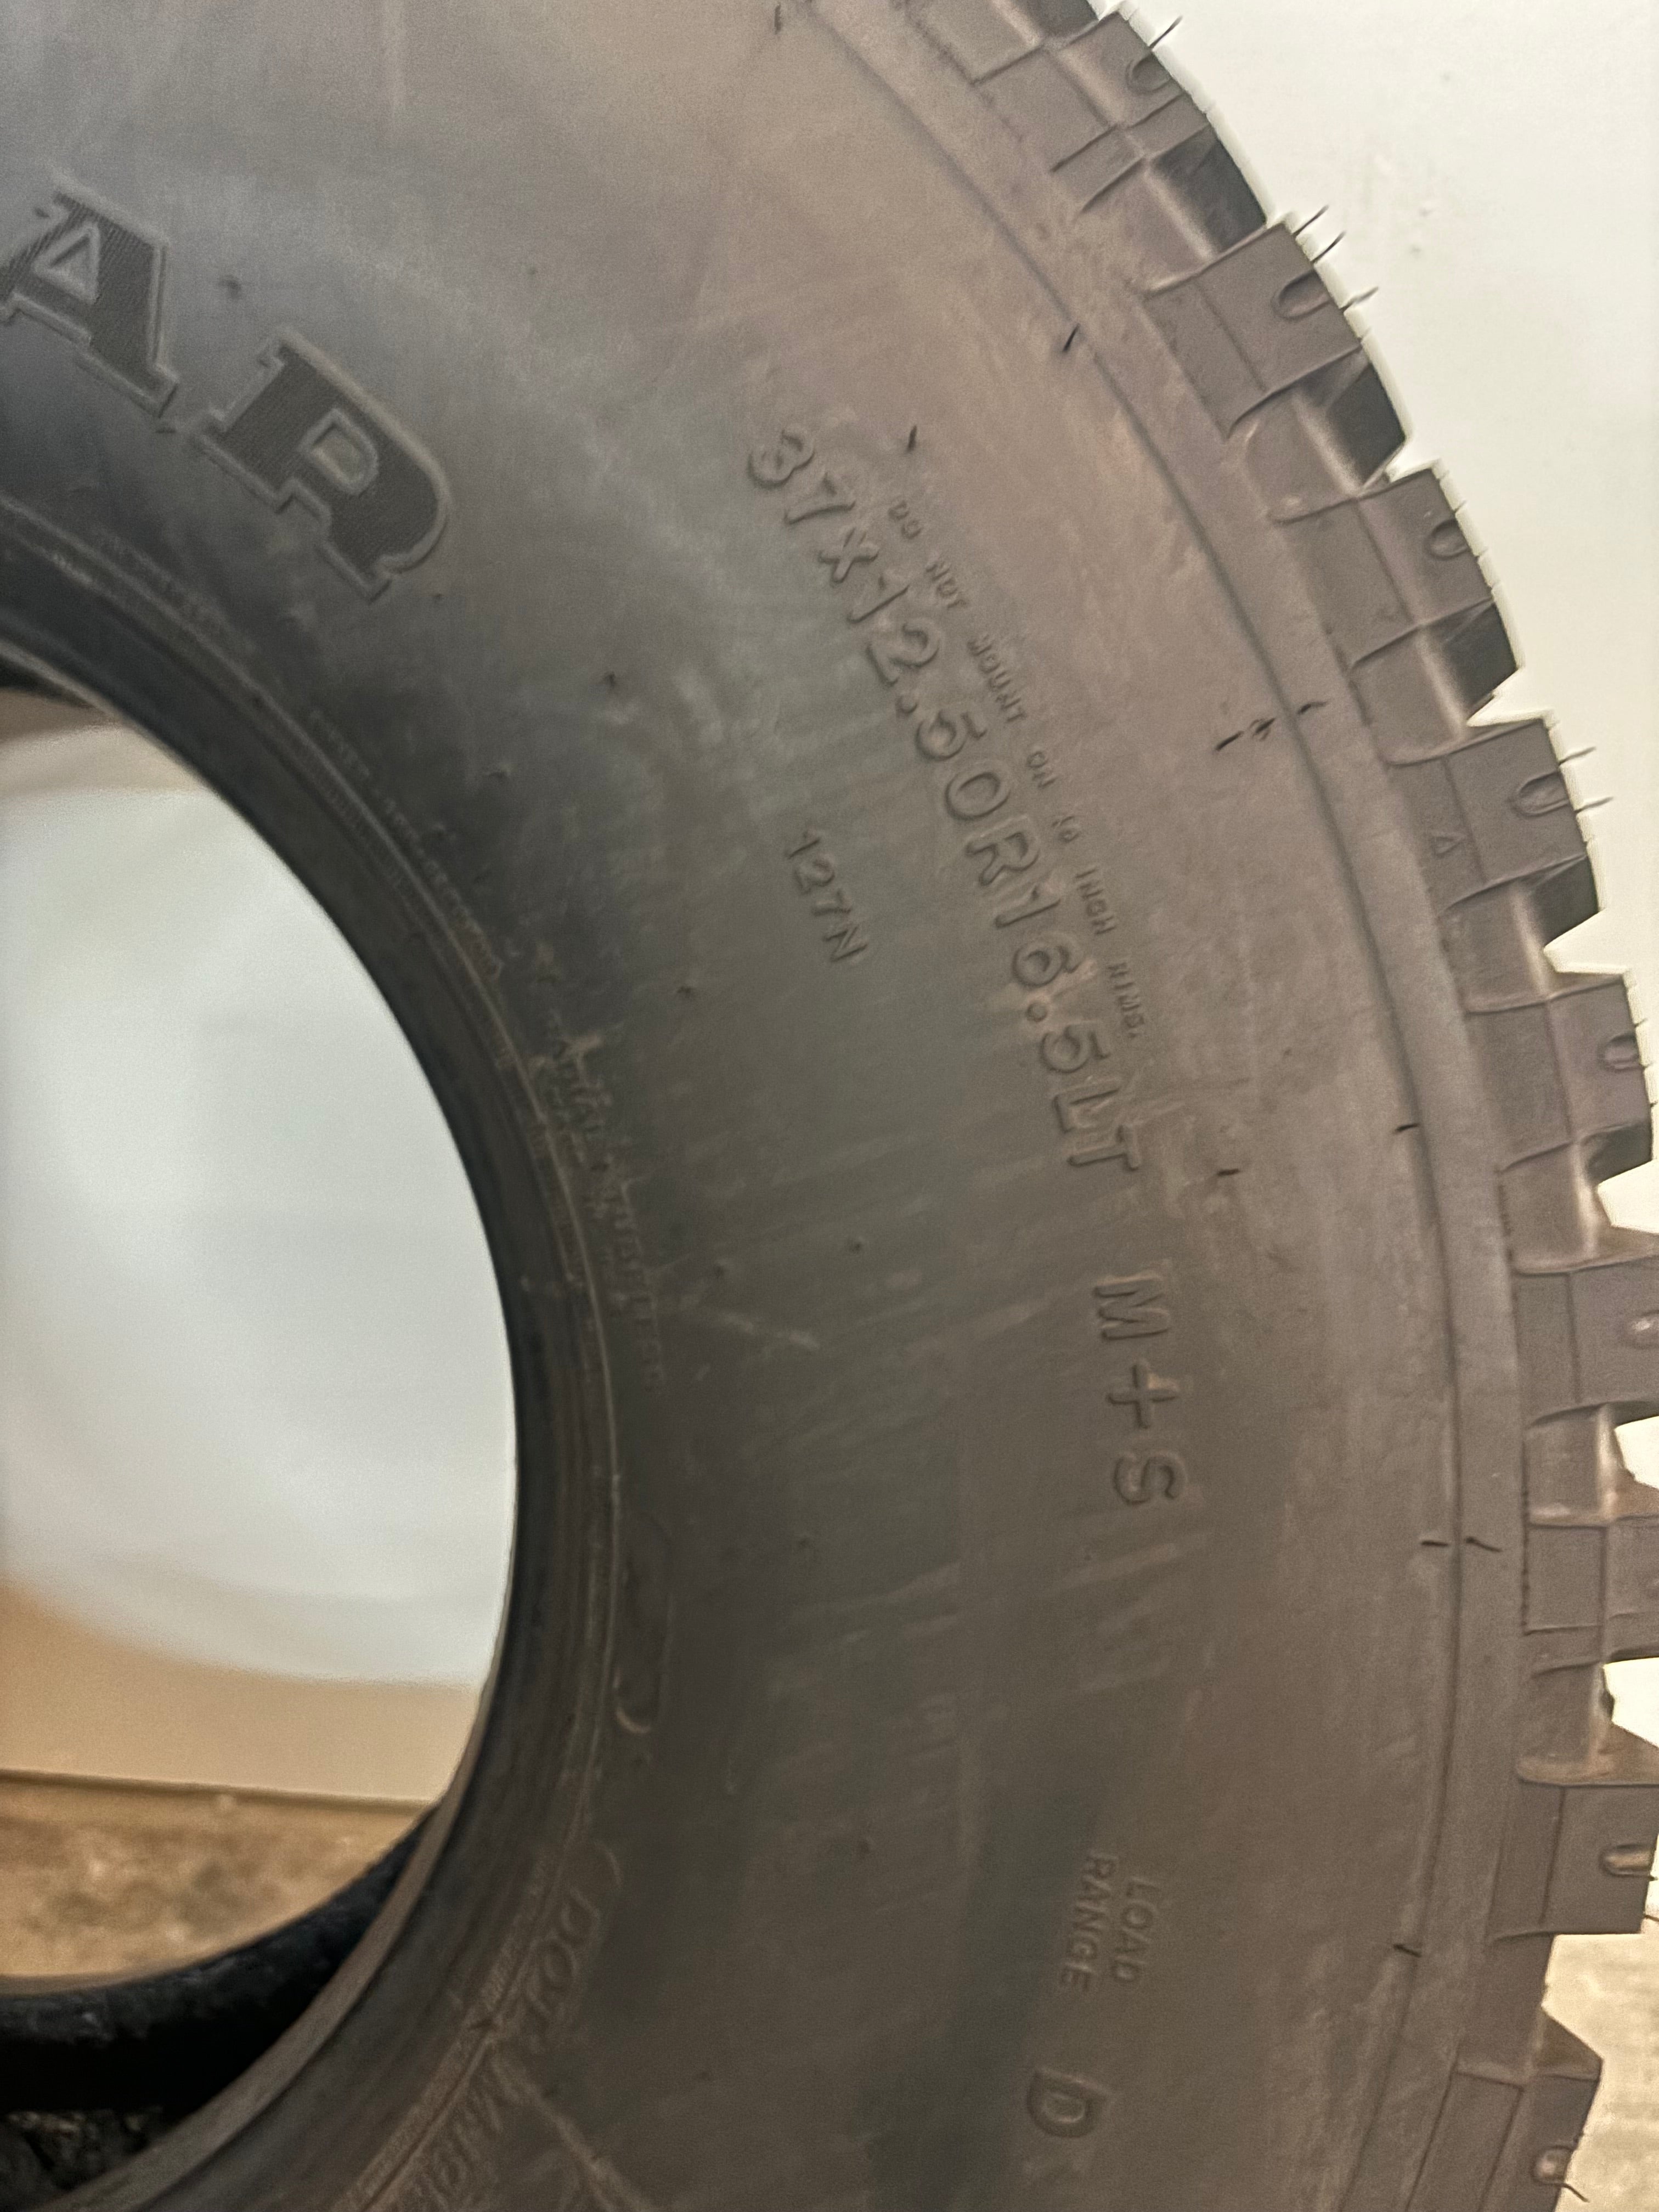 37×12.50R16.5LT Goodyear Wrangler MT Used (Hummer tire)